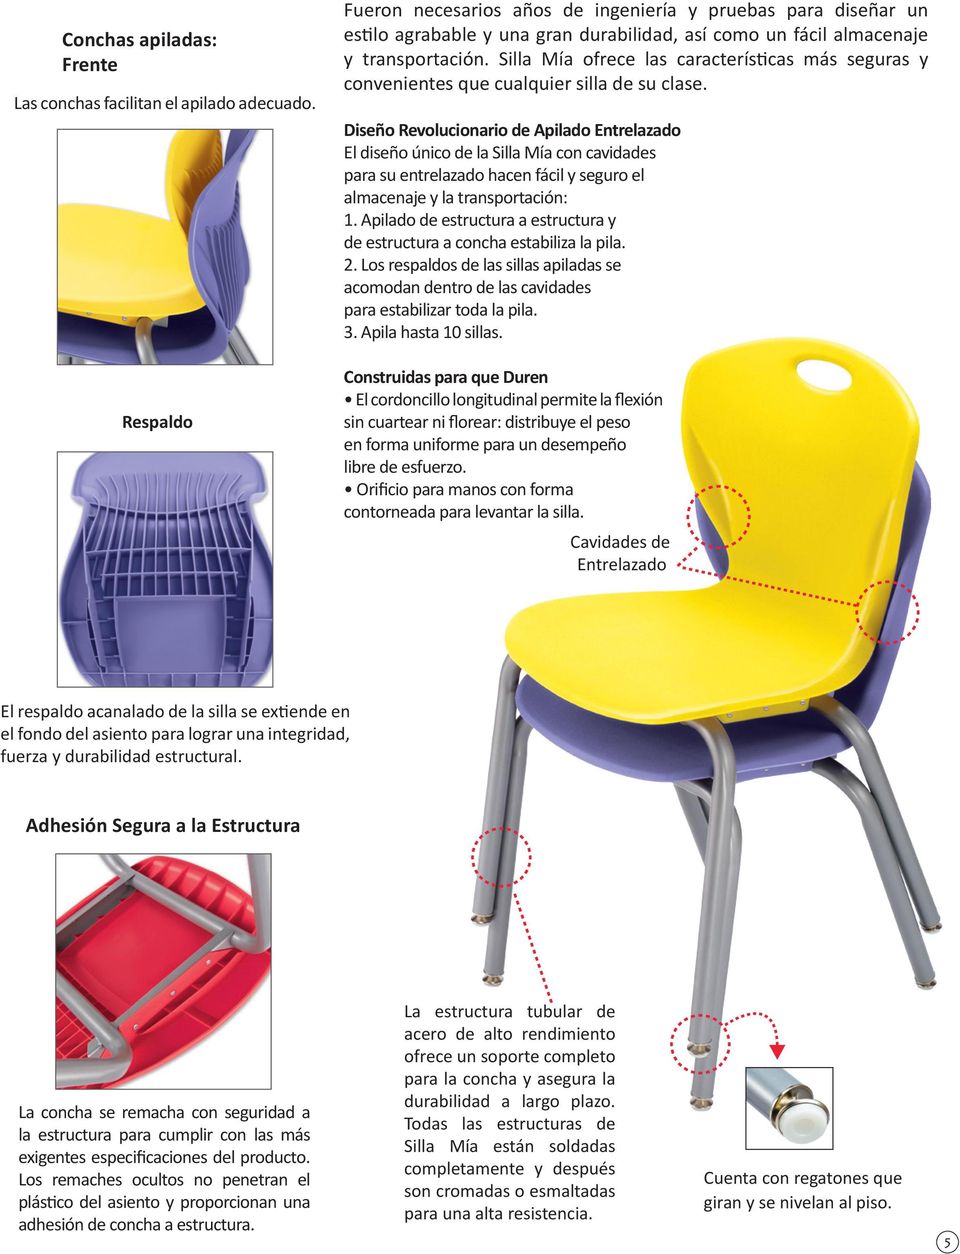 Silla Mía ofrece las características más seguras y convenientes que cualquier silla de su clase.